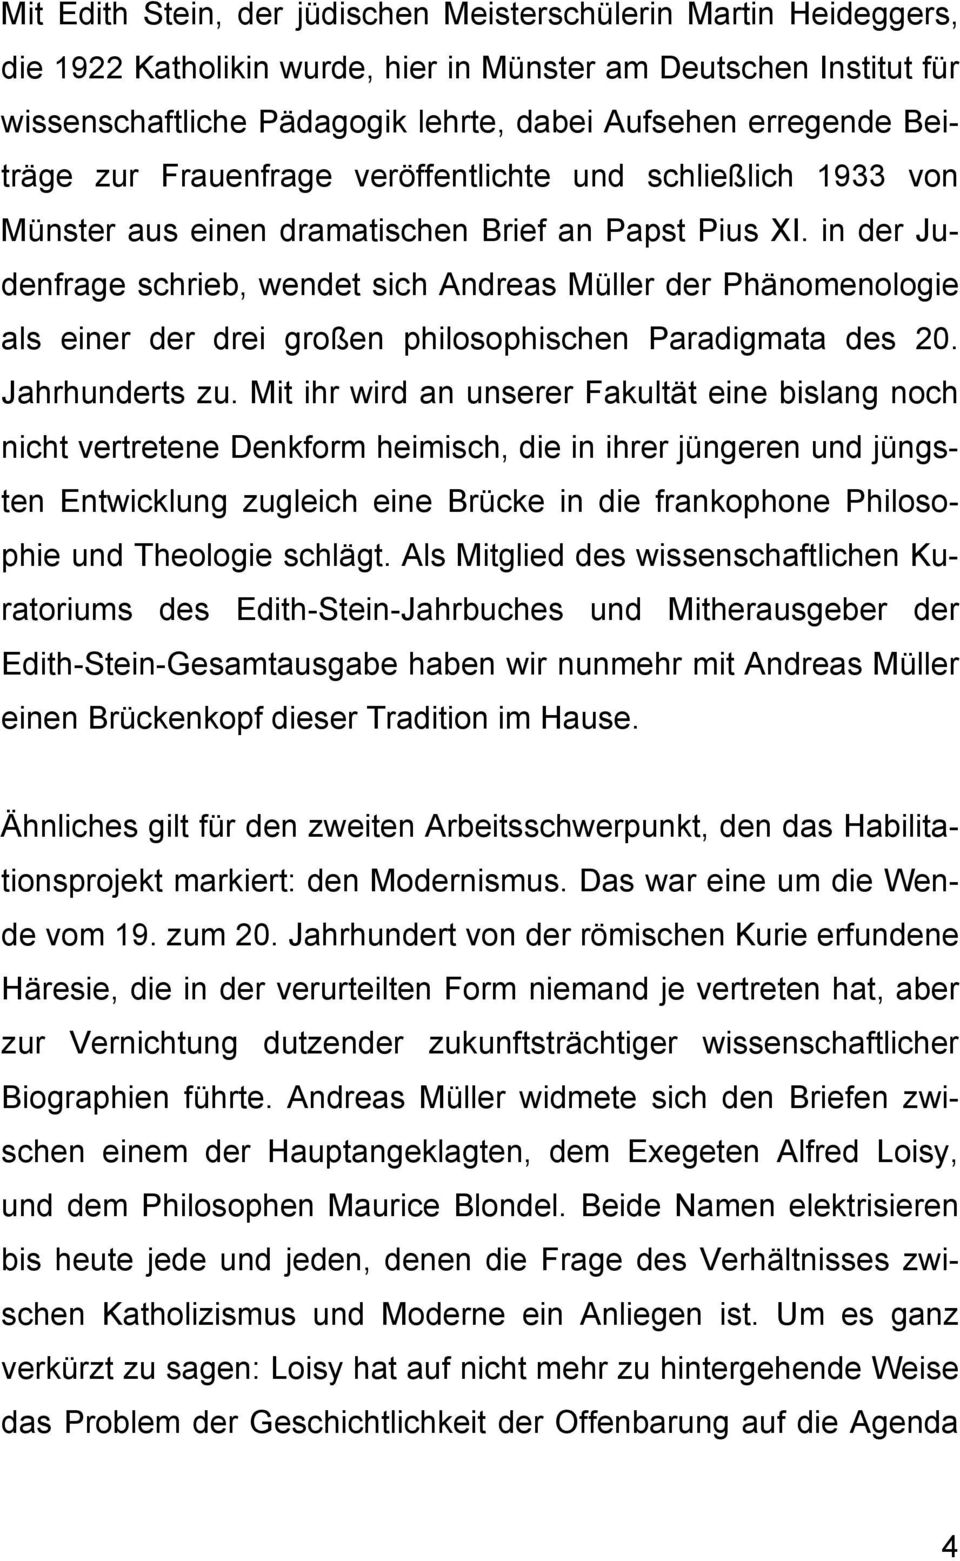 in der Judenfrage schrieb, wendet sich Andreas Müller der Phänomenologie als einer der drei großen philosophischen Paradigmata des 20. Jahrhunderts zu.